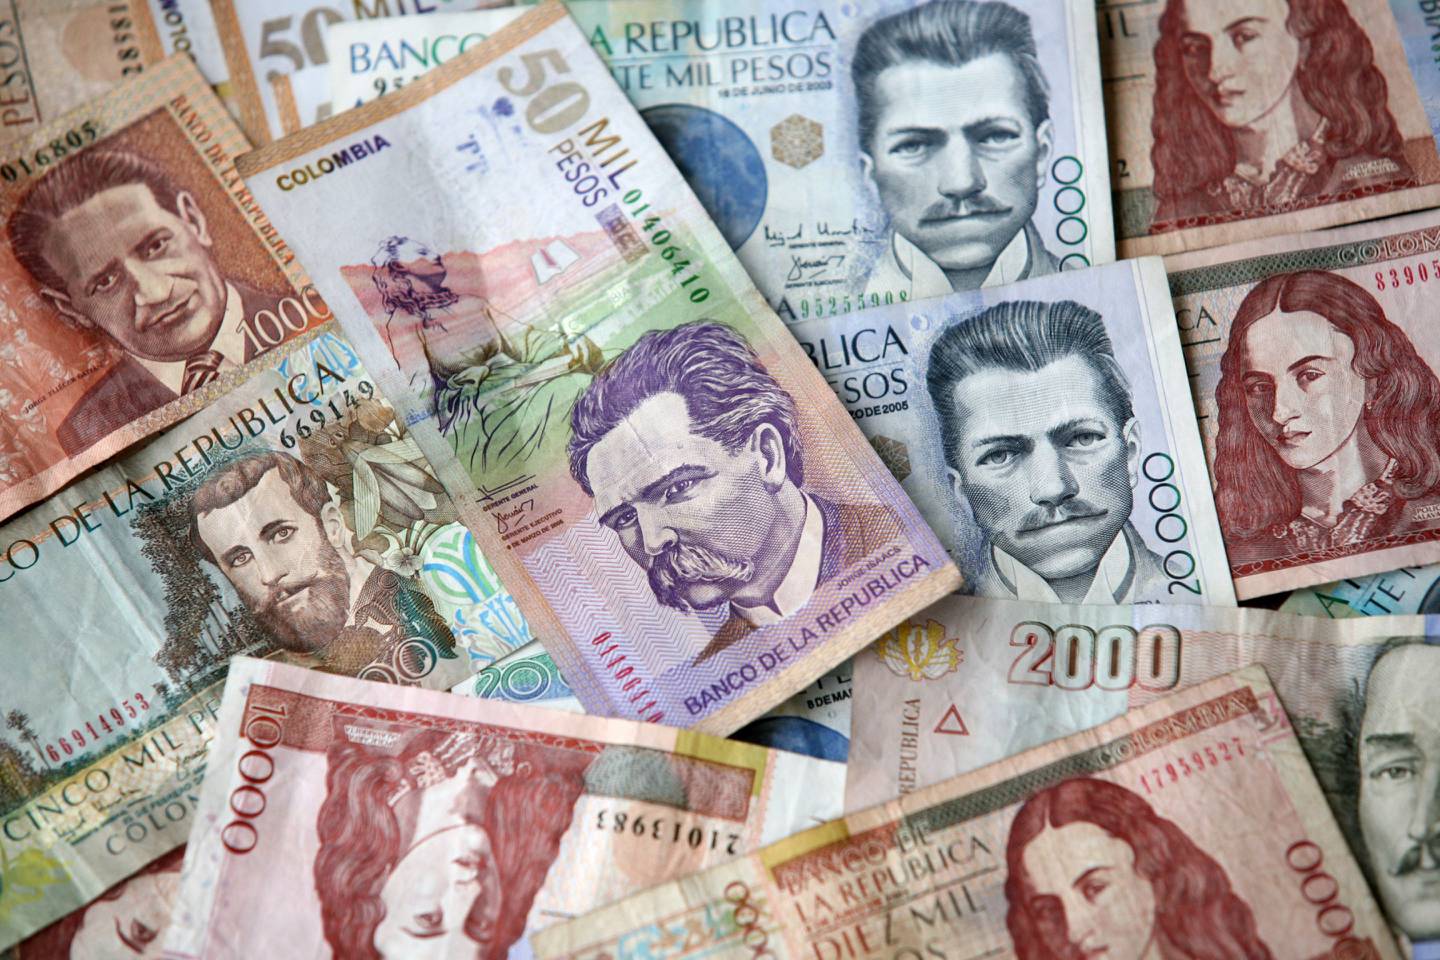 Peso colombiano, el segundo más depreciado del mundo en julio frente al dólar